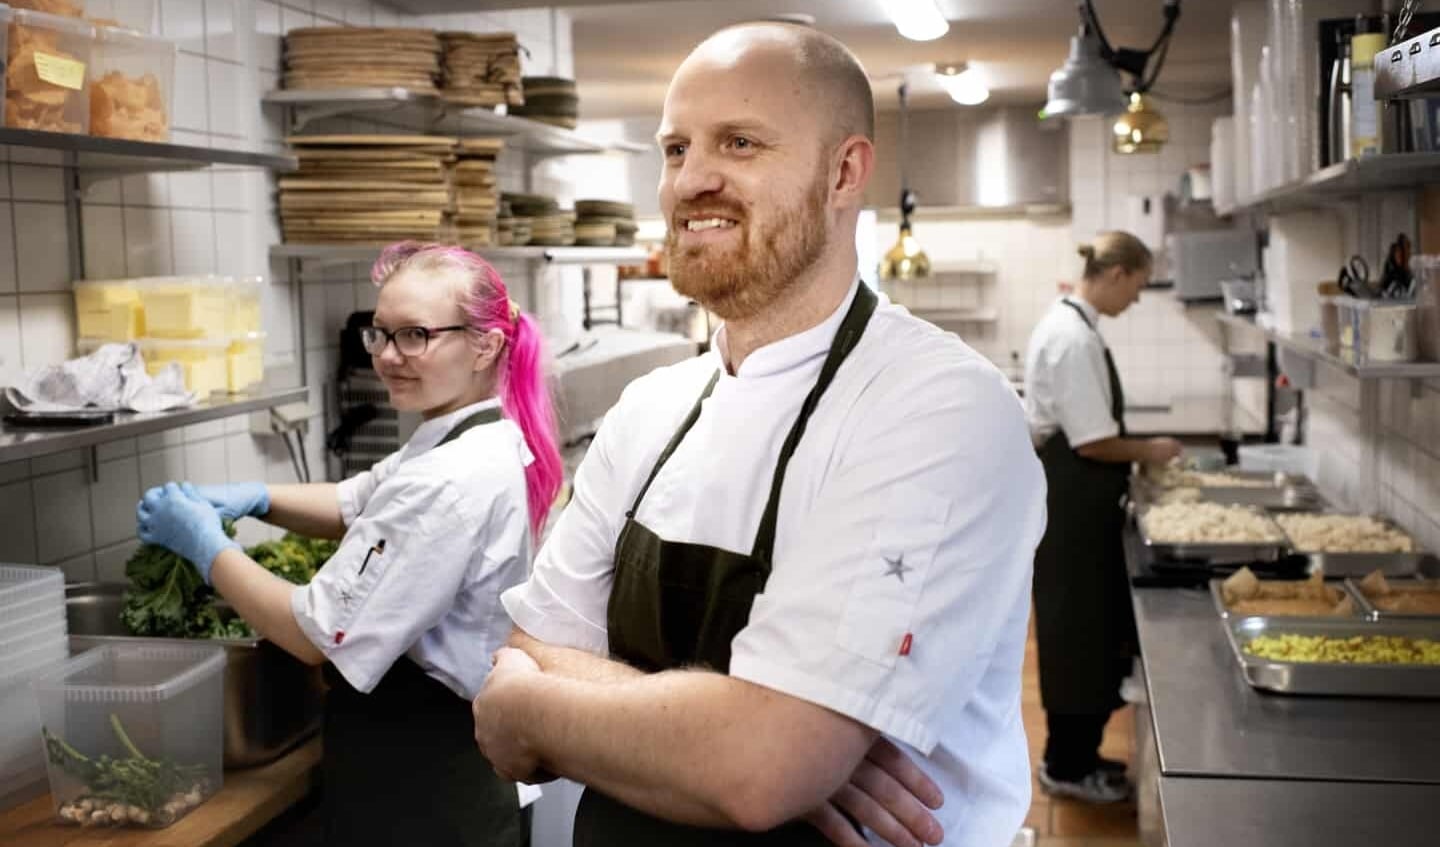 Køkkenchef Steffen Snitgaard har grund til at være glad. Hans nye arbejdsplads Restaurant Marsk ved Marsk Tower er blevet nomineret til årets gennembrud hos Den Danske Spiseguide. Foto: 